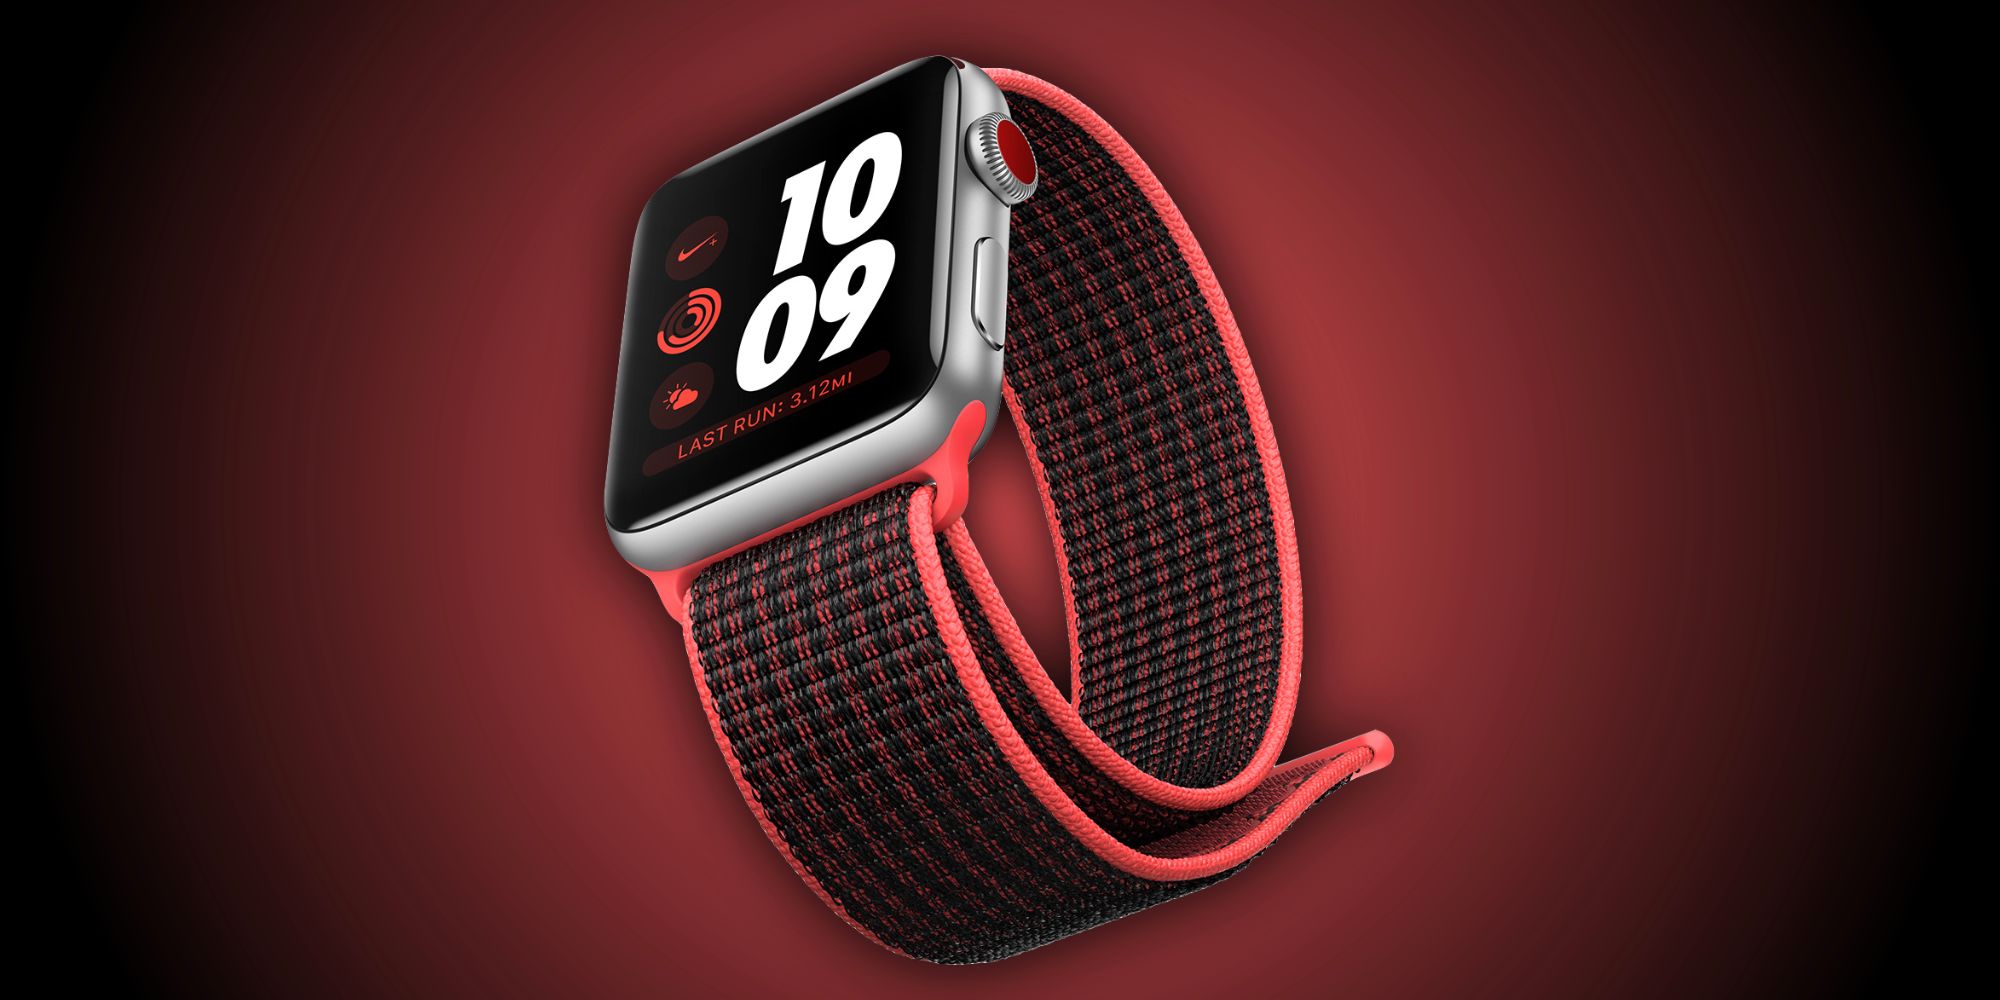 El Apple Watch Series 3 podría descontinuarse pronto, y eso es genial